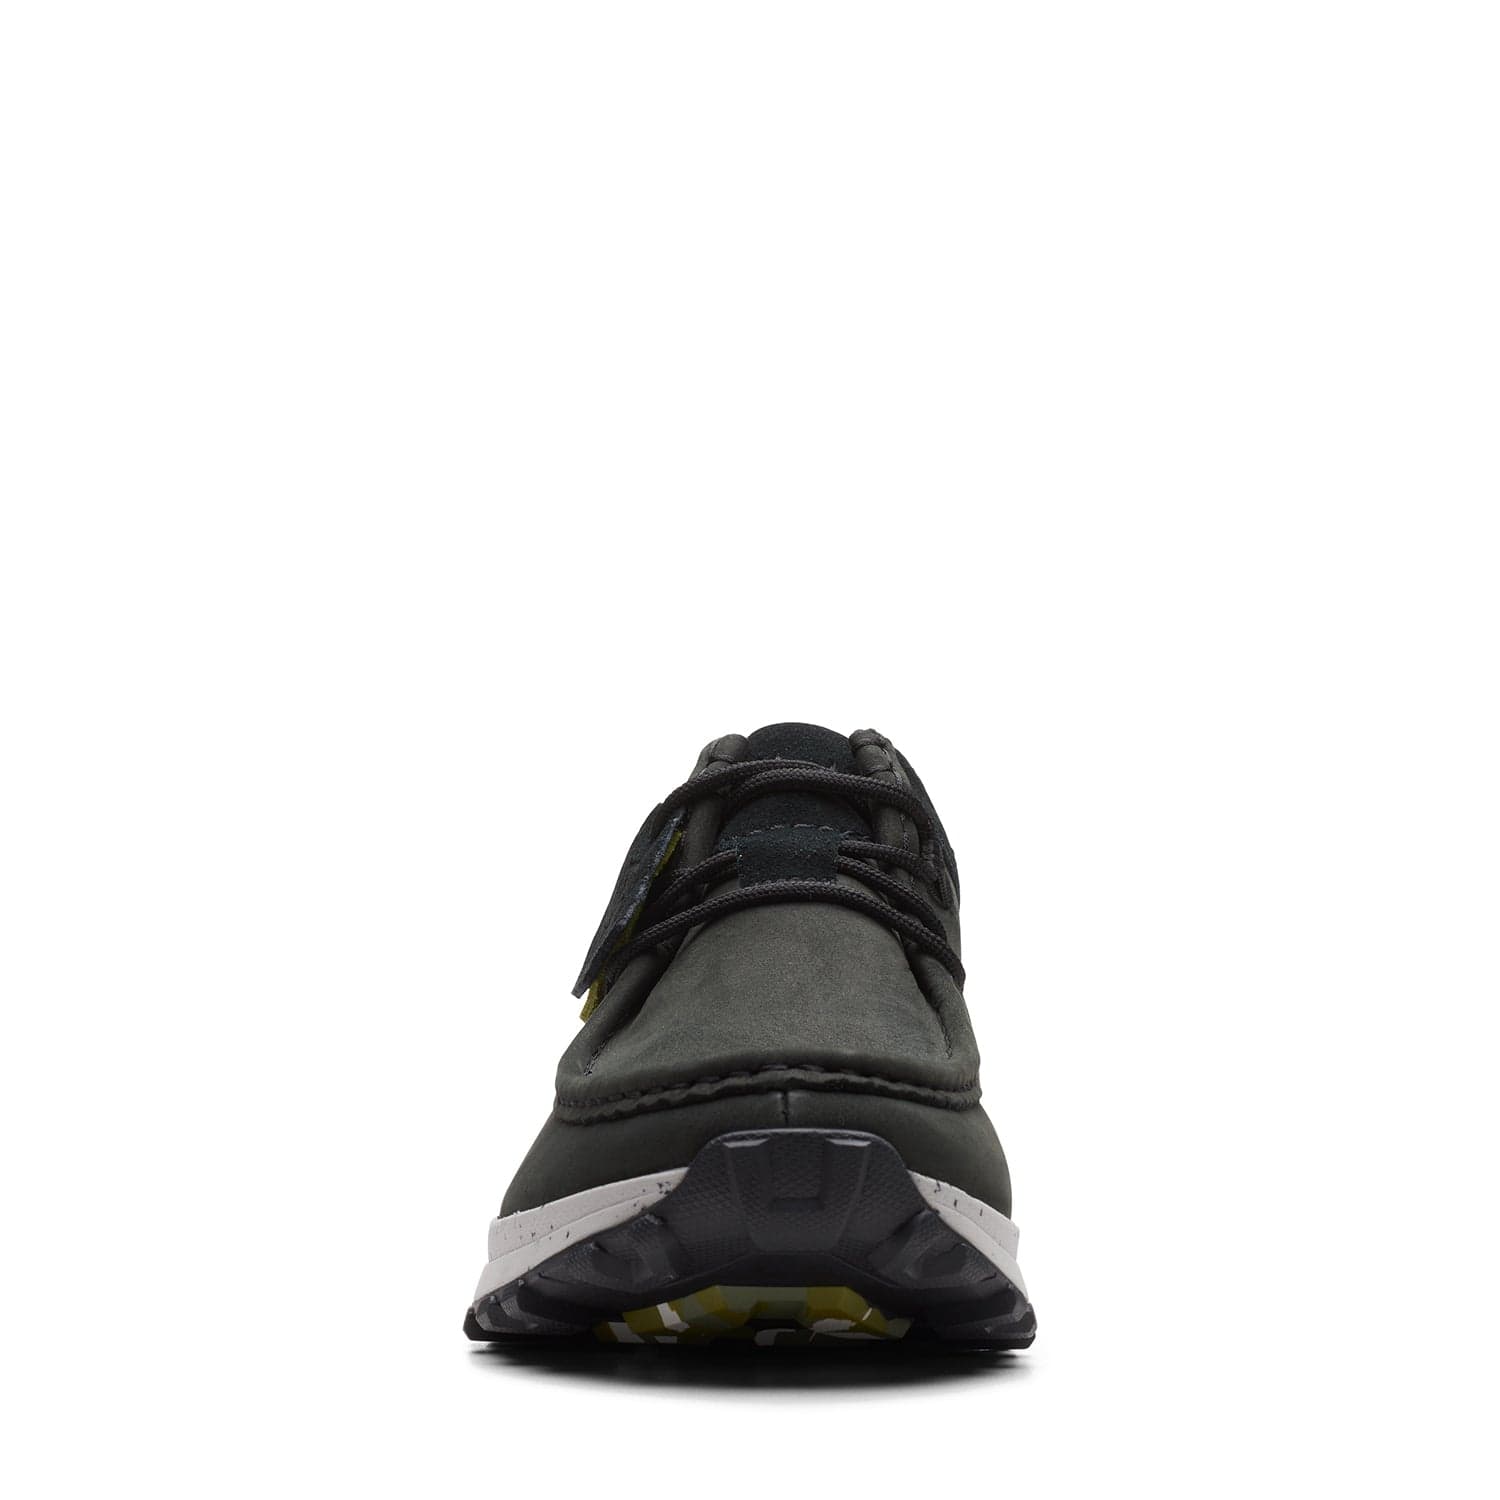 Clarks Atl Trek Wally - Shoes - Black Nubuck - 261656817 - G Width (Standard Fit)